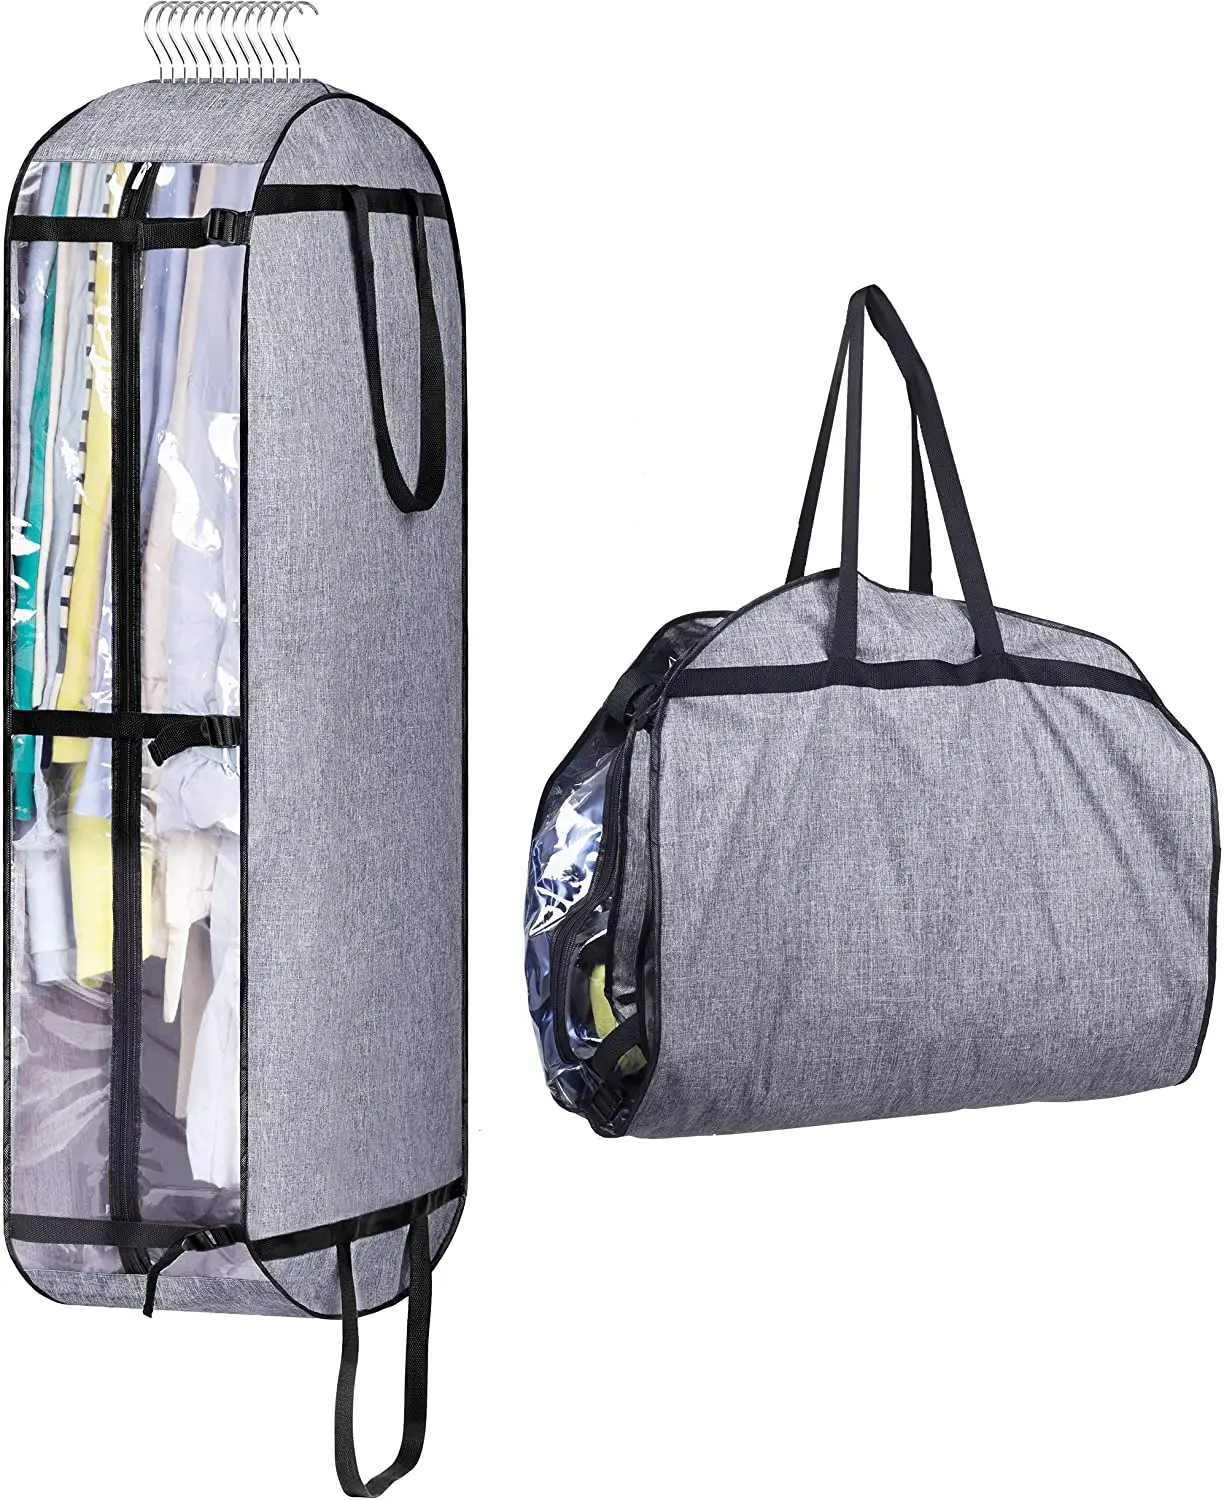 Bolsas colgantes de alta calidad para almacenamiento de ropa, bolsos móviles para armario, cubierta de viaje para hombre y mujer, abrigo, chaqueta